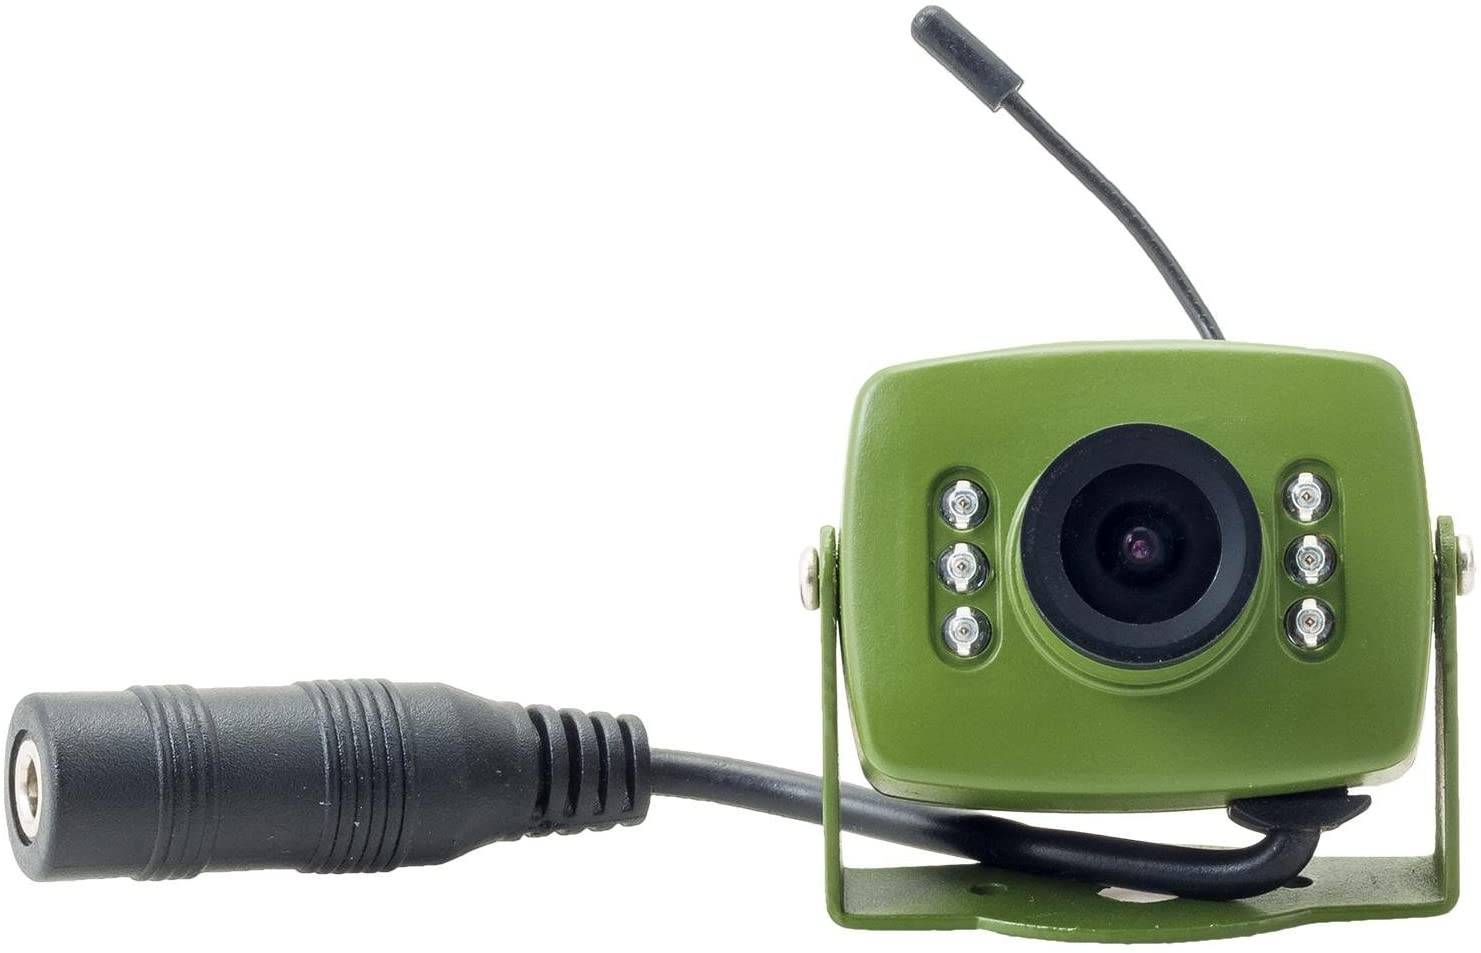 700TVL Wireless Birdbox Cameras -700TVL camera